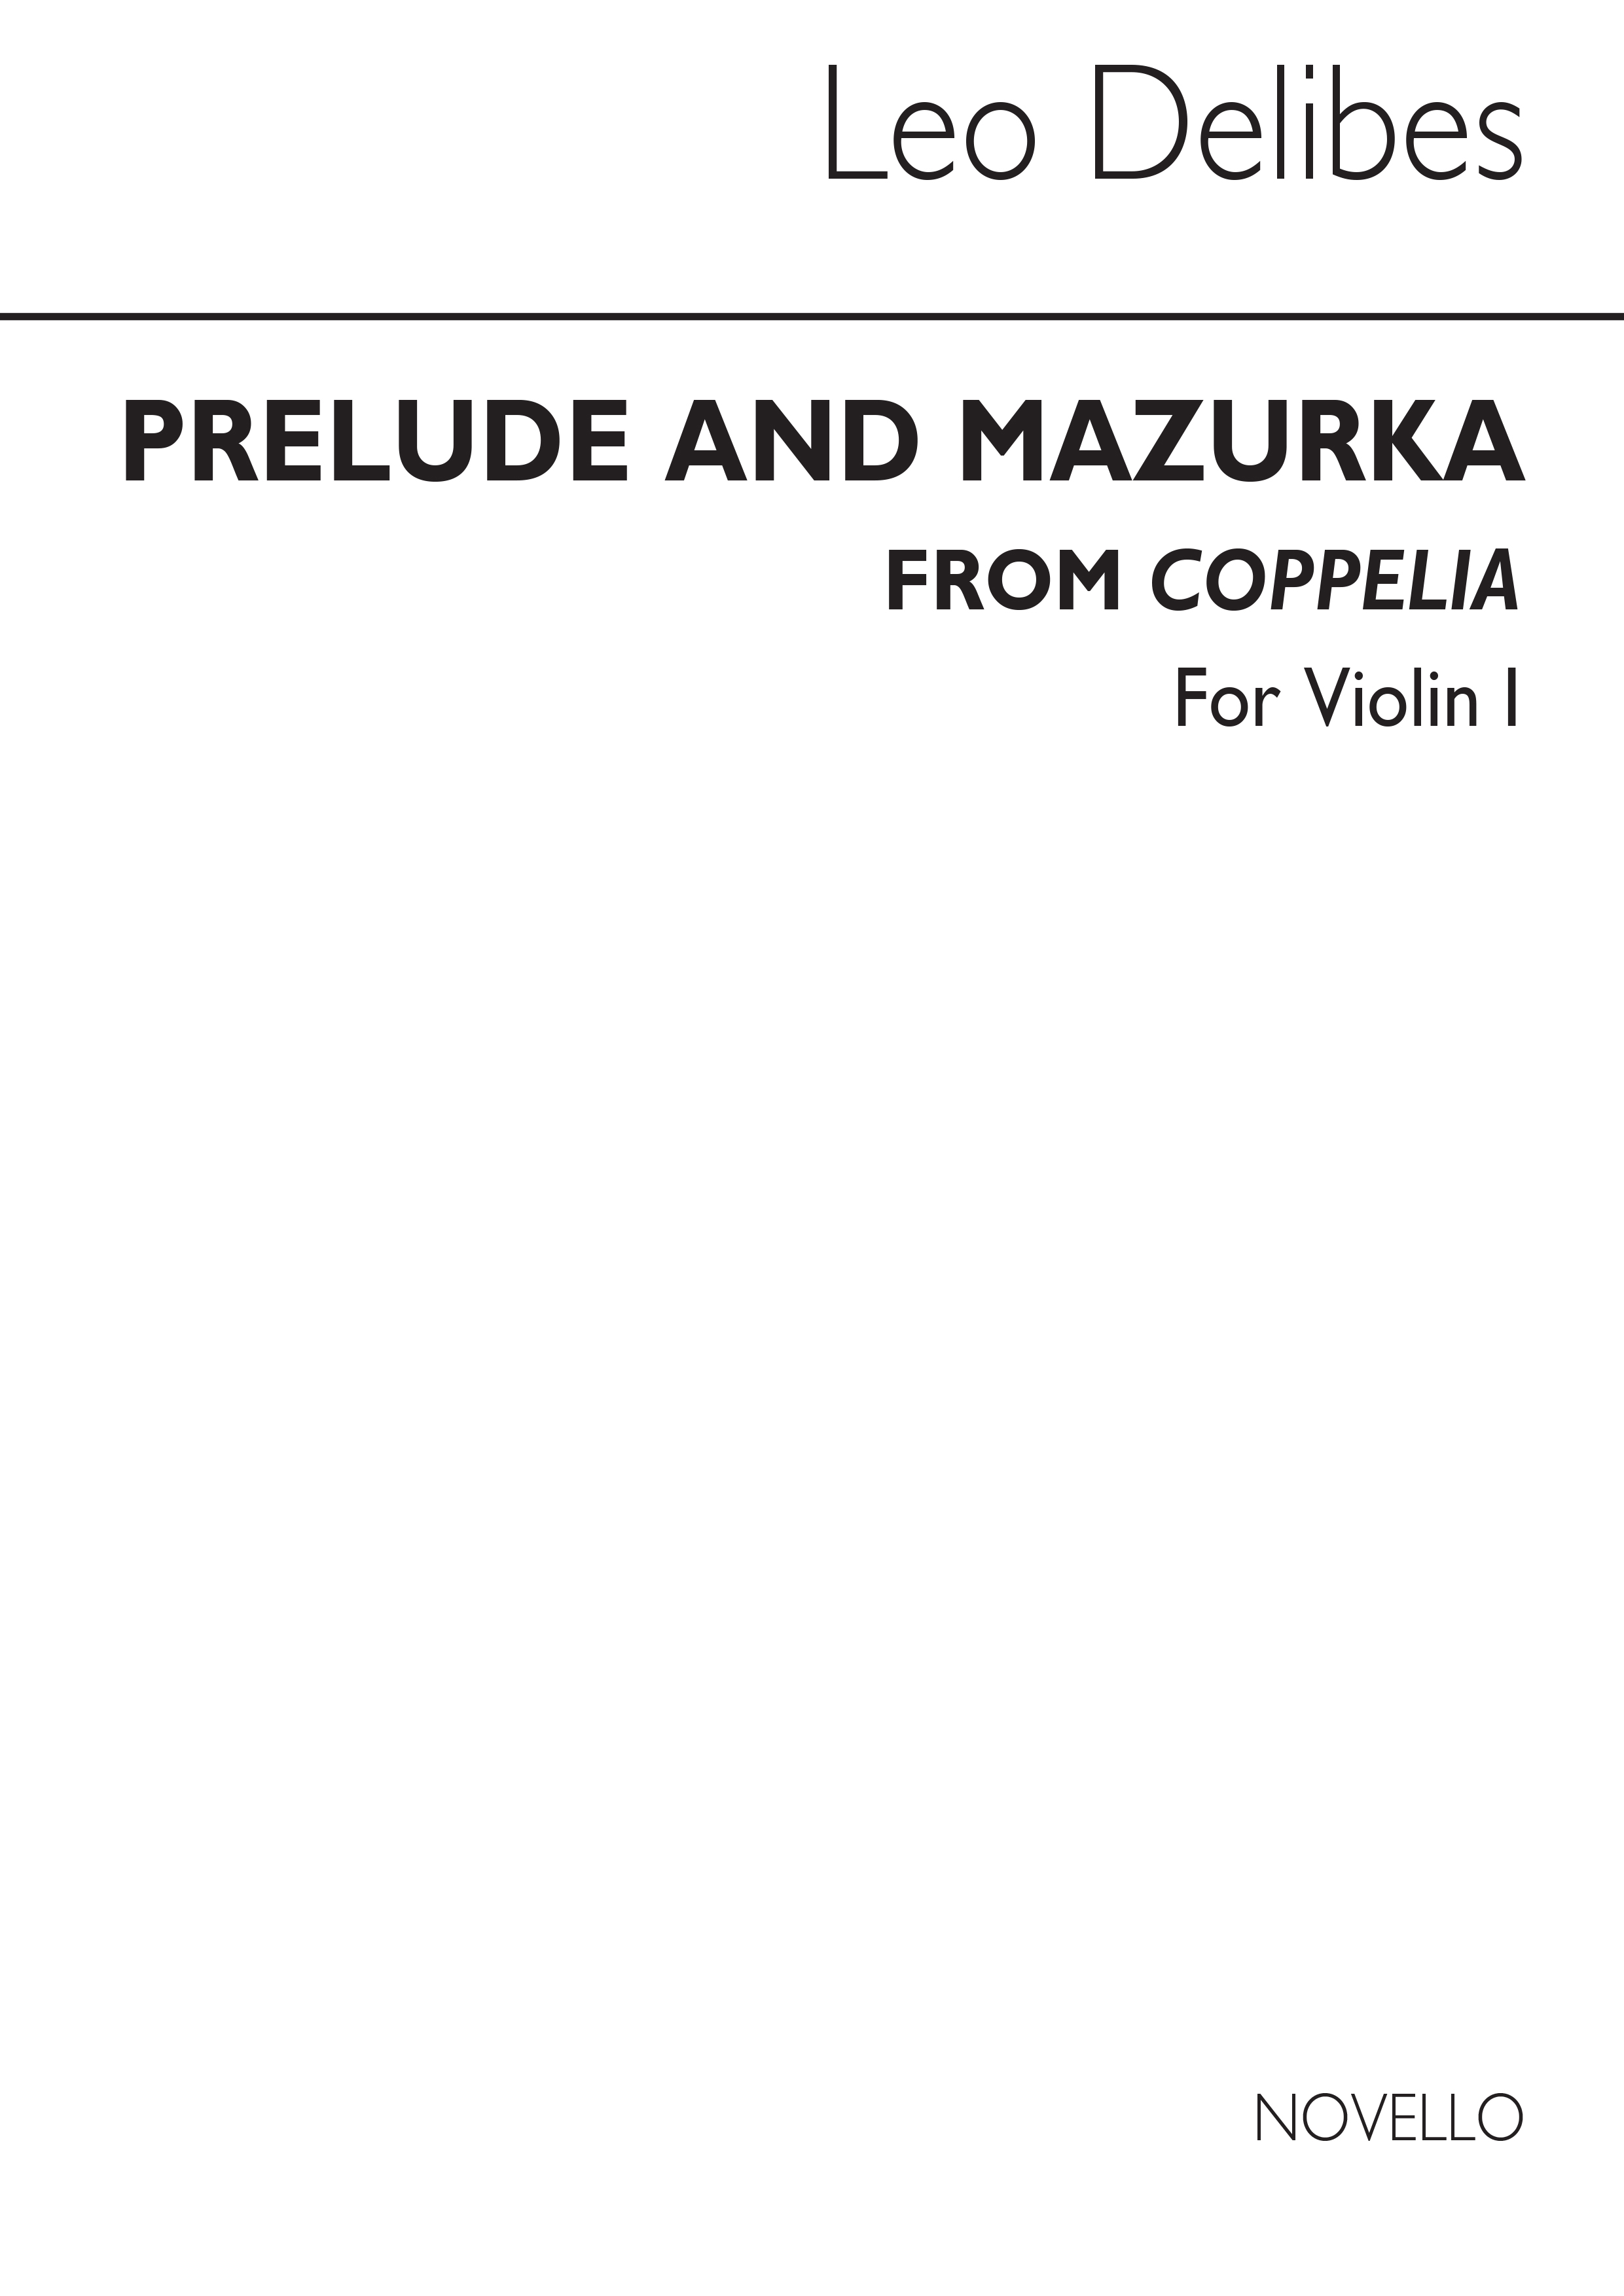 Lo Delibes: Prelude & Mazurka (Cobb) Vln 1: Violin: Part